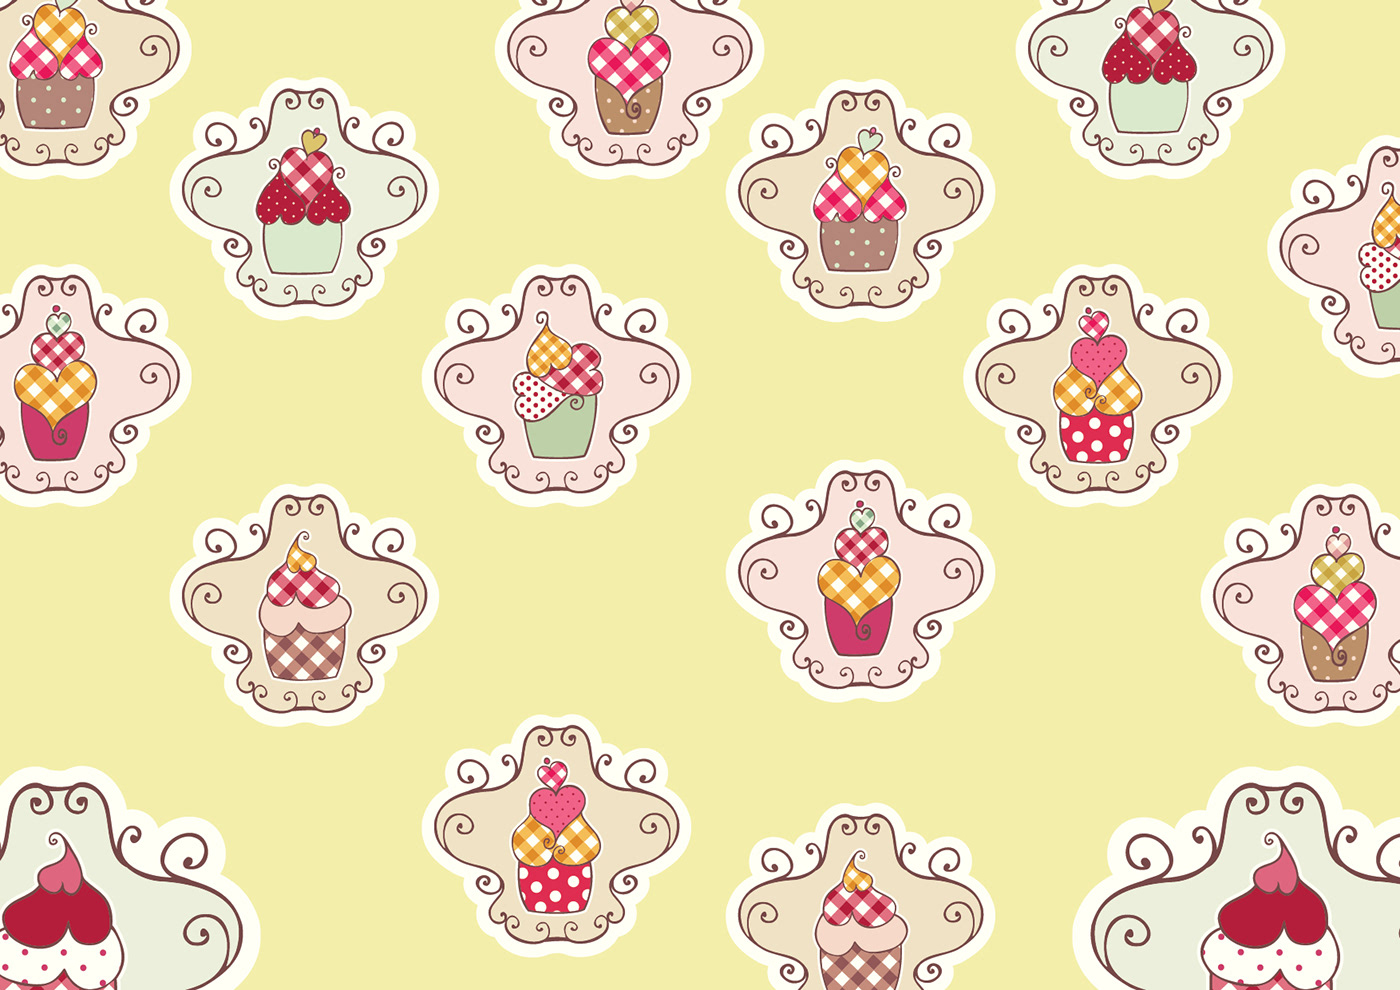 ricettario cupcakes InDesign Illustrator vector graphics recipes